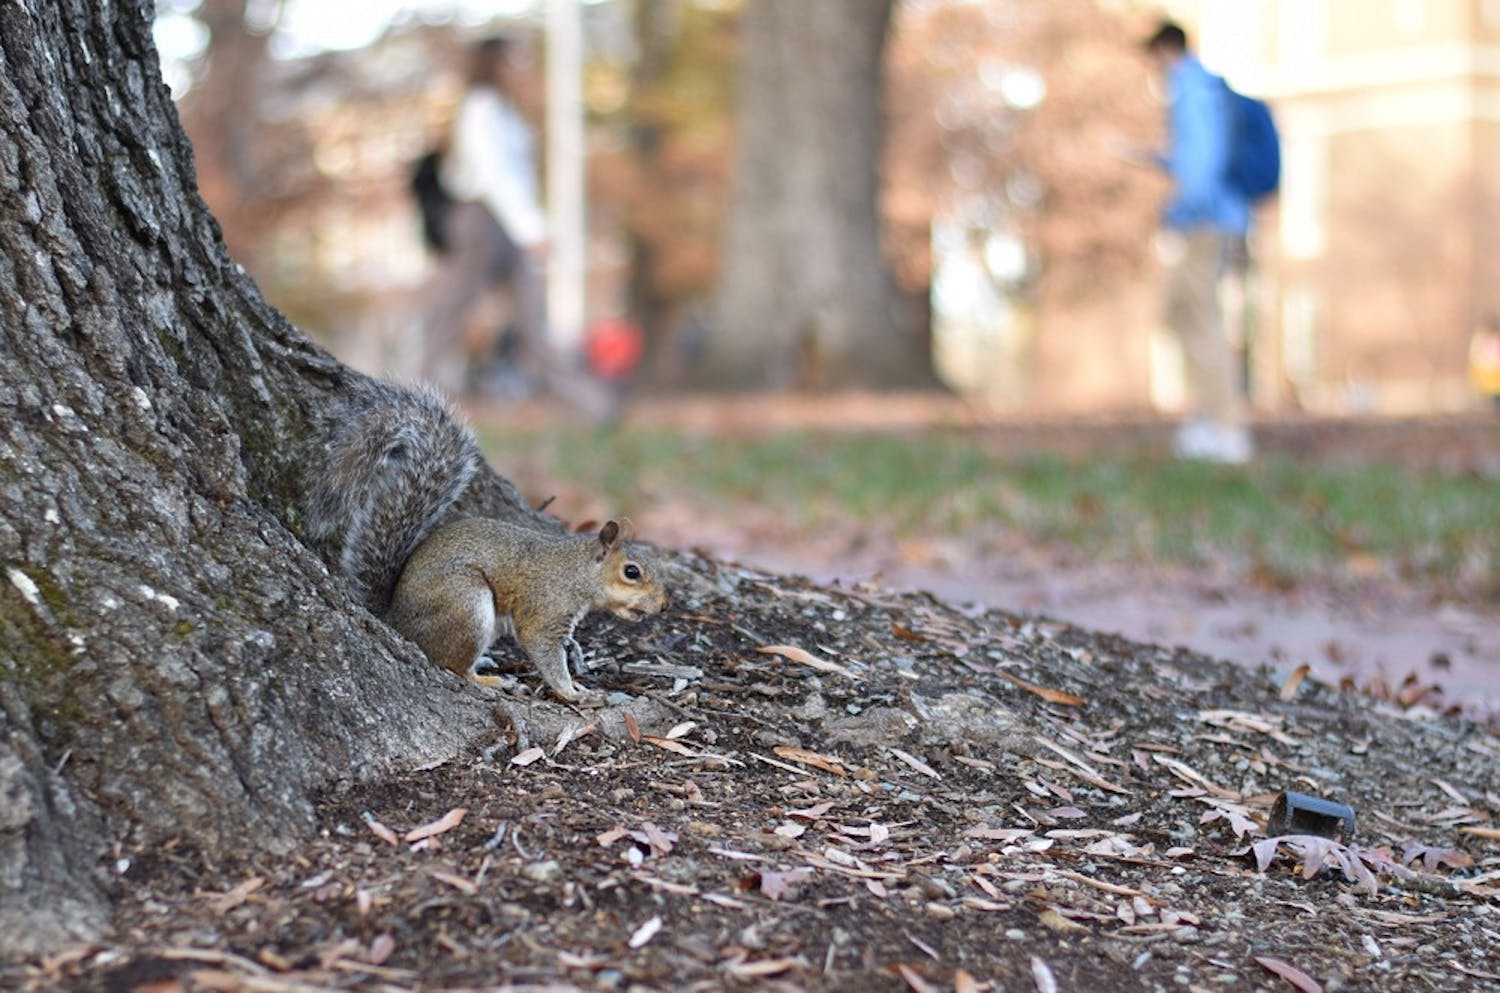 A squirrel runs down a tree in the quad.